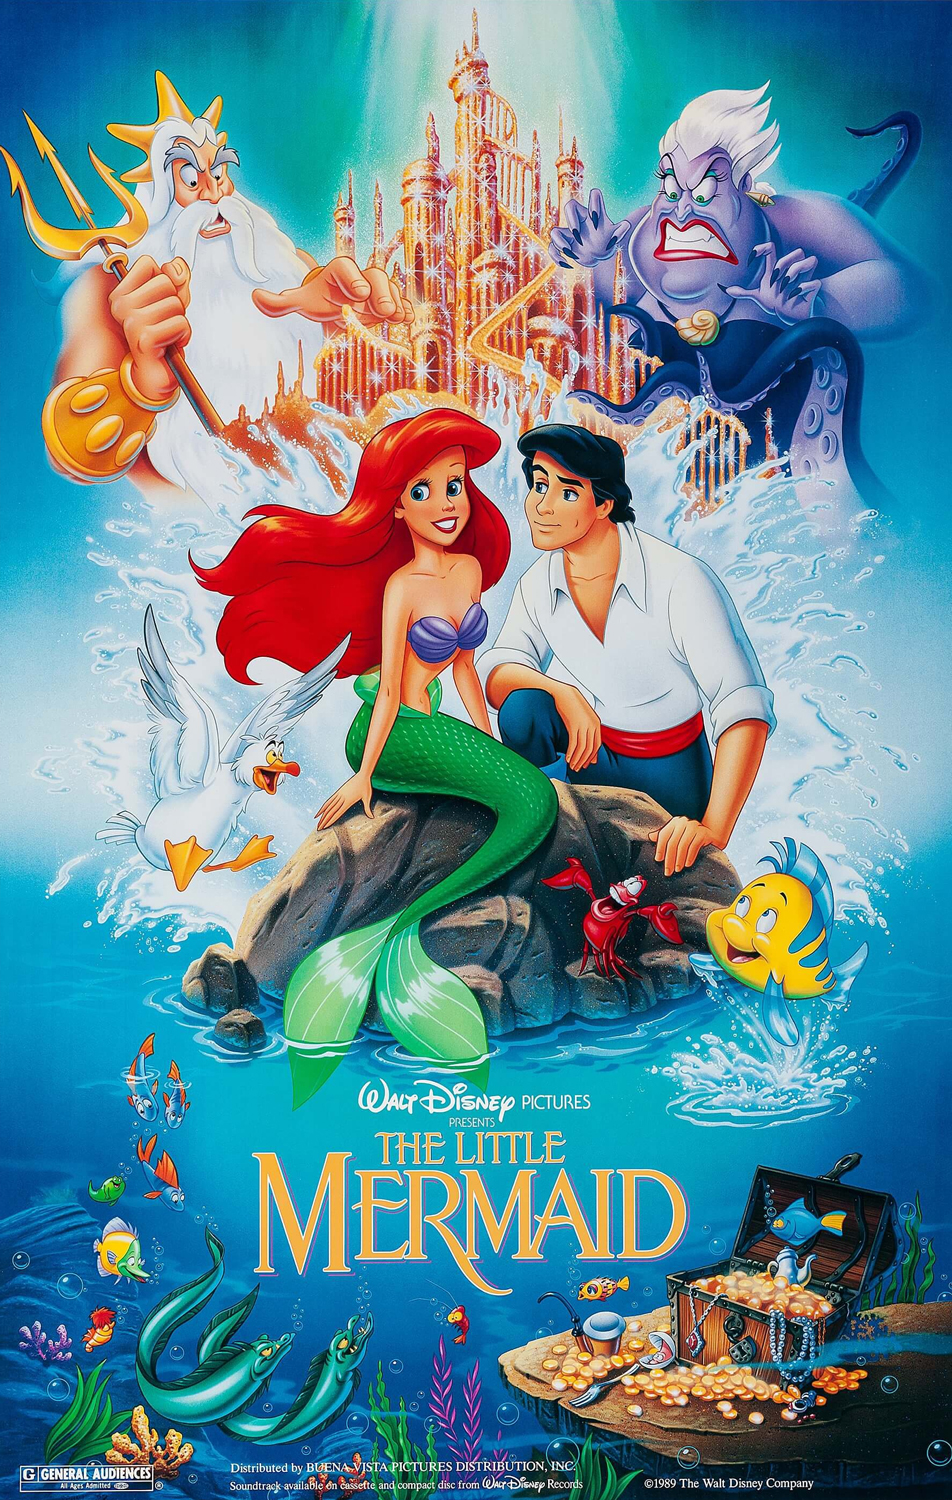 Ariel - Portrait du Personnage Disney de La Petite Sirène